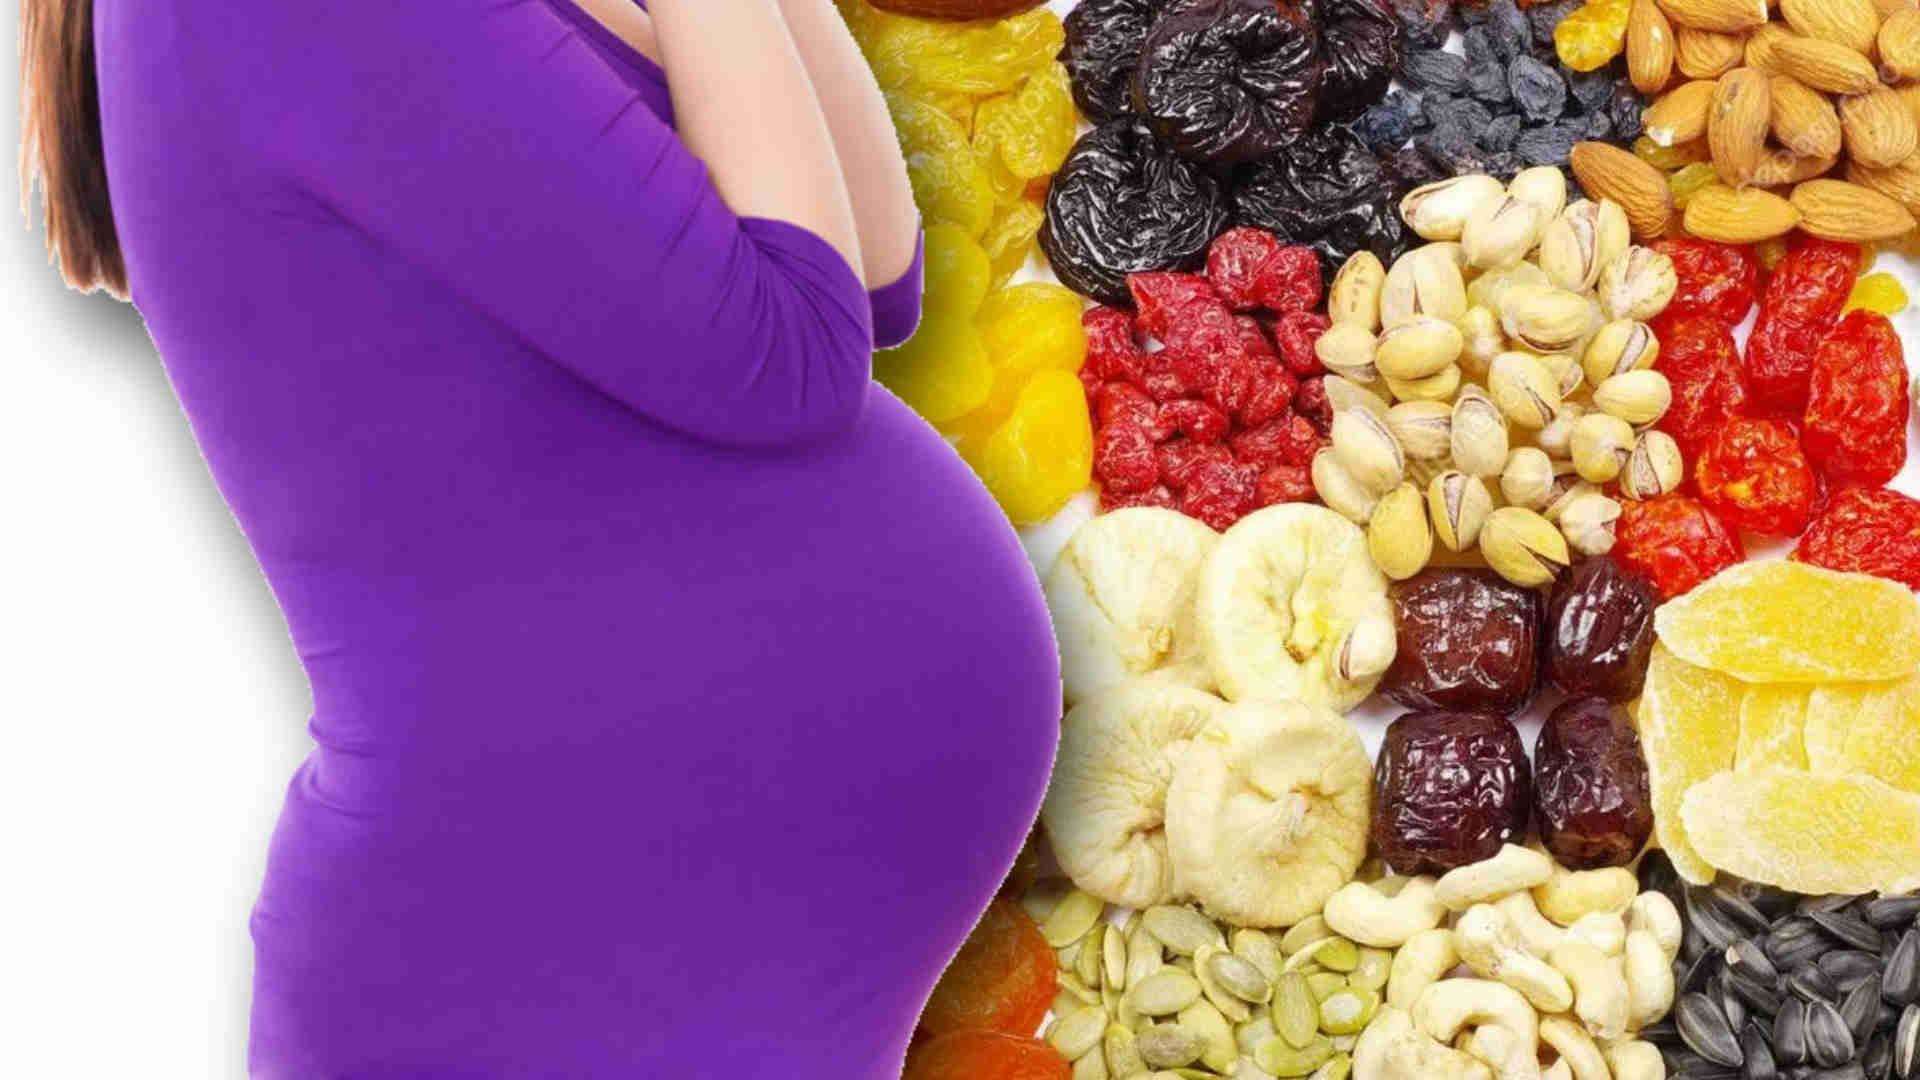 Pregnancy Tips: क्या आप गर्भावस्था में ड्राई फ्रूट खाते हैं? पहले इन बातों पर ध्यान दें